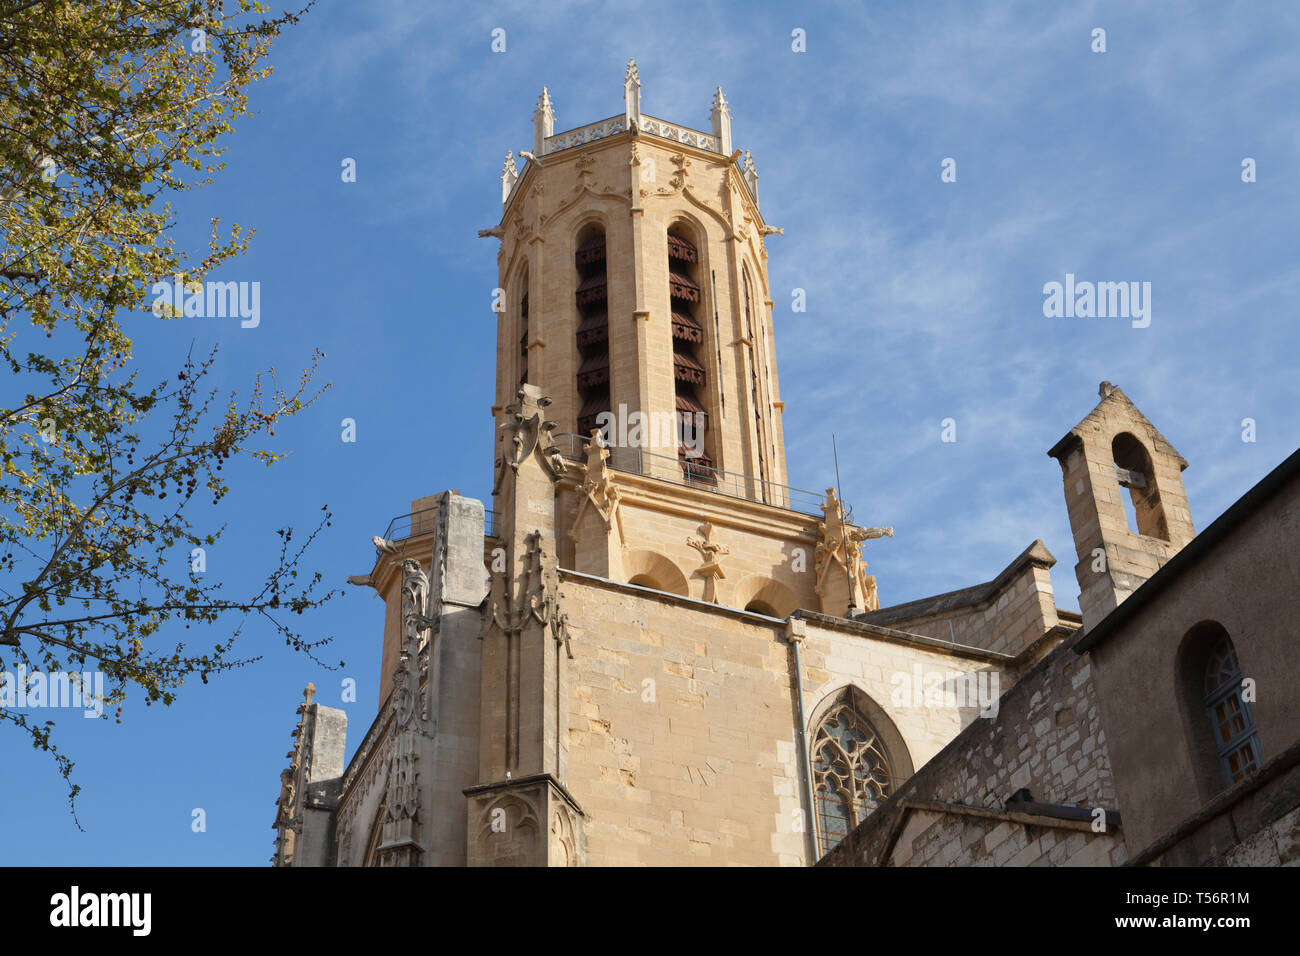 Cathédrale Saint-Sauveur, Aix-en-Provence, France. Stock Photo